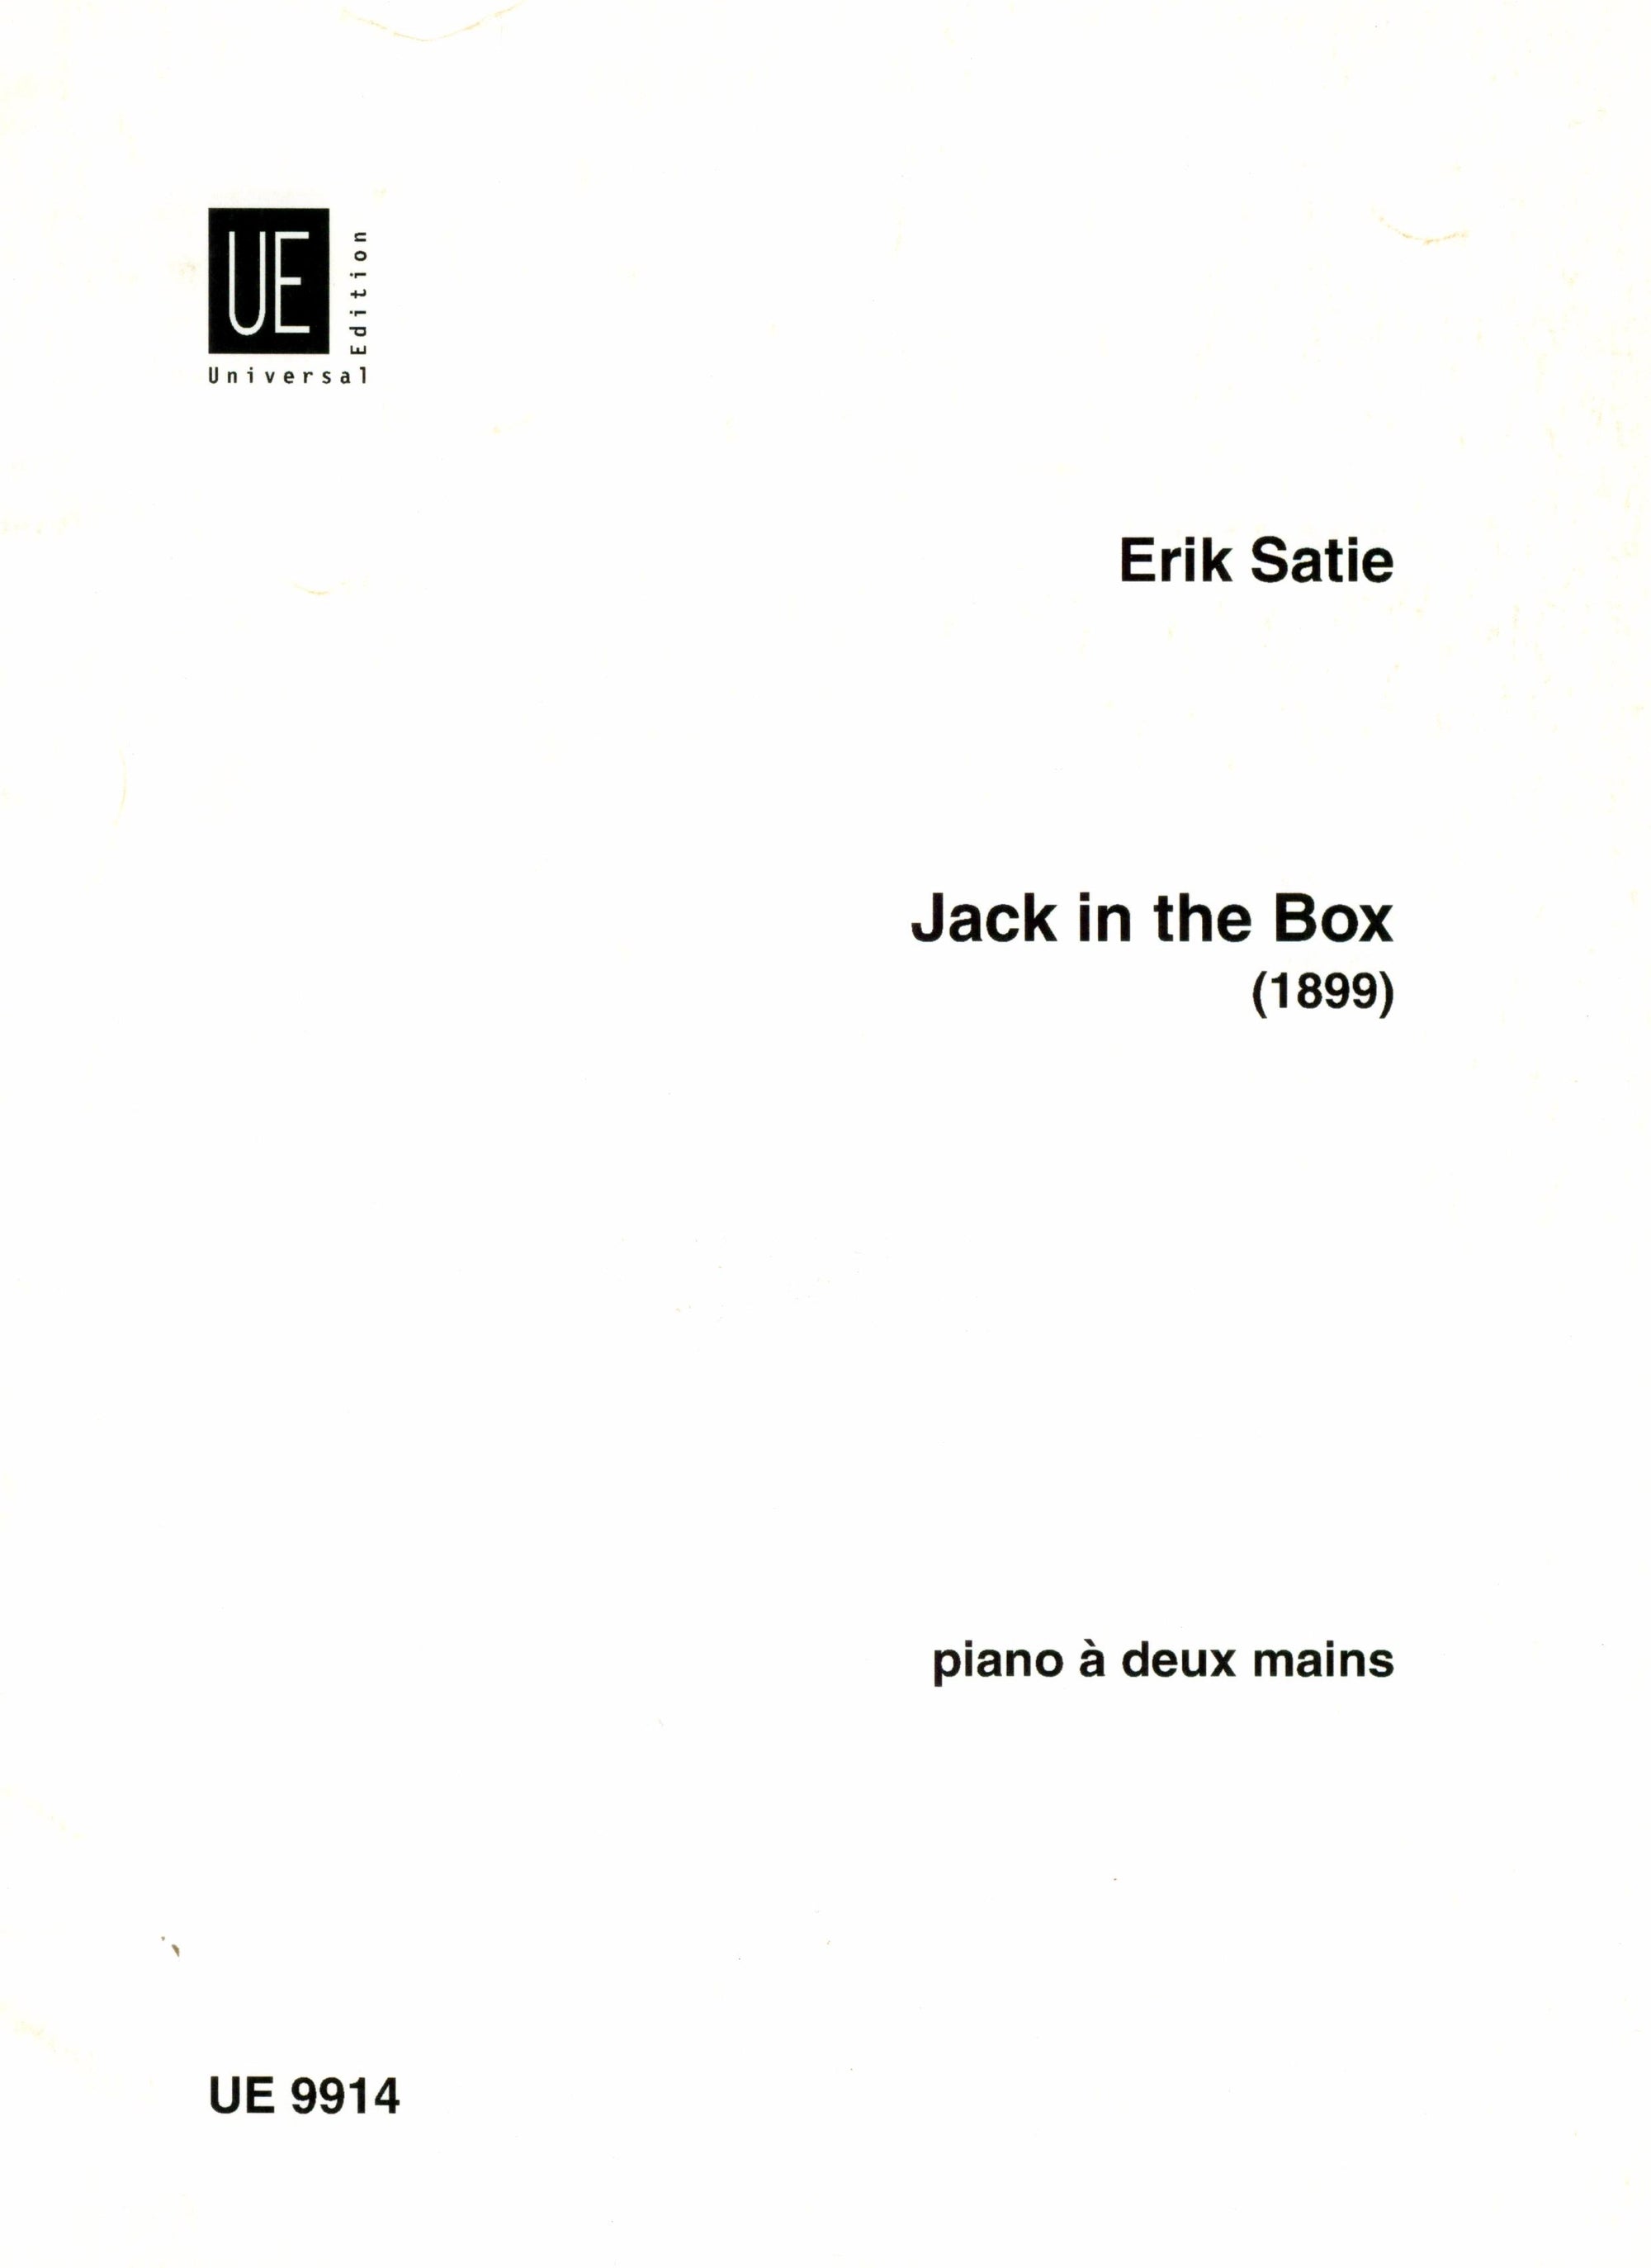 Satie: Jack in the Box